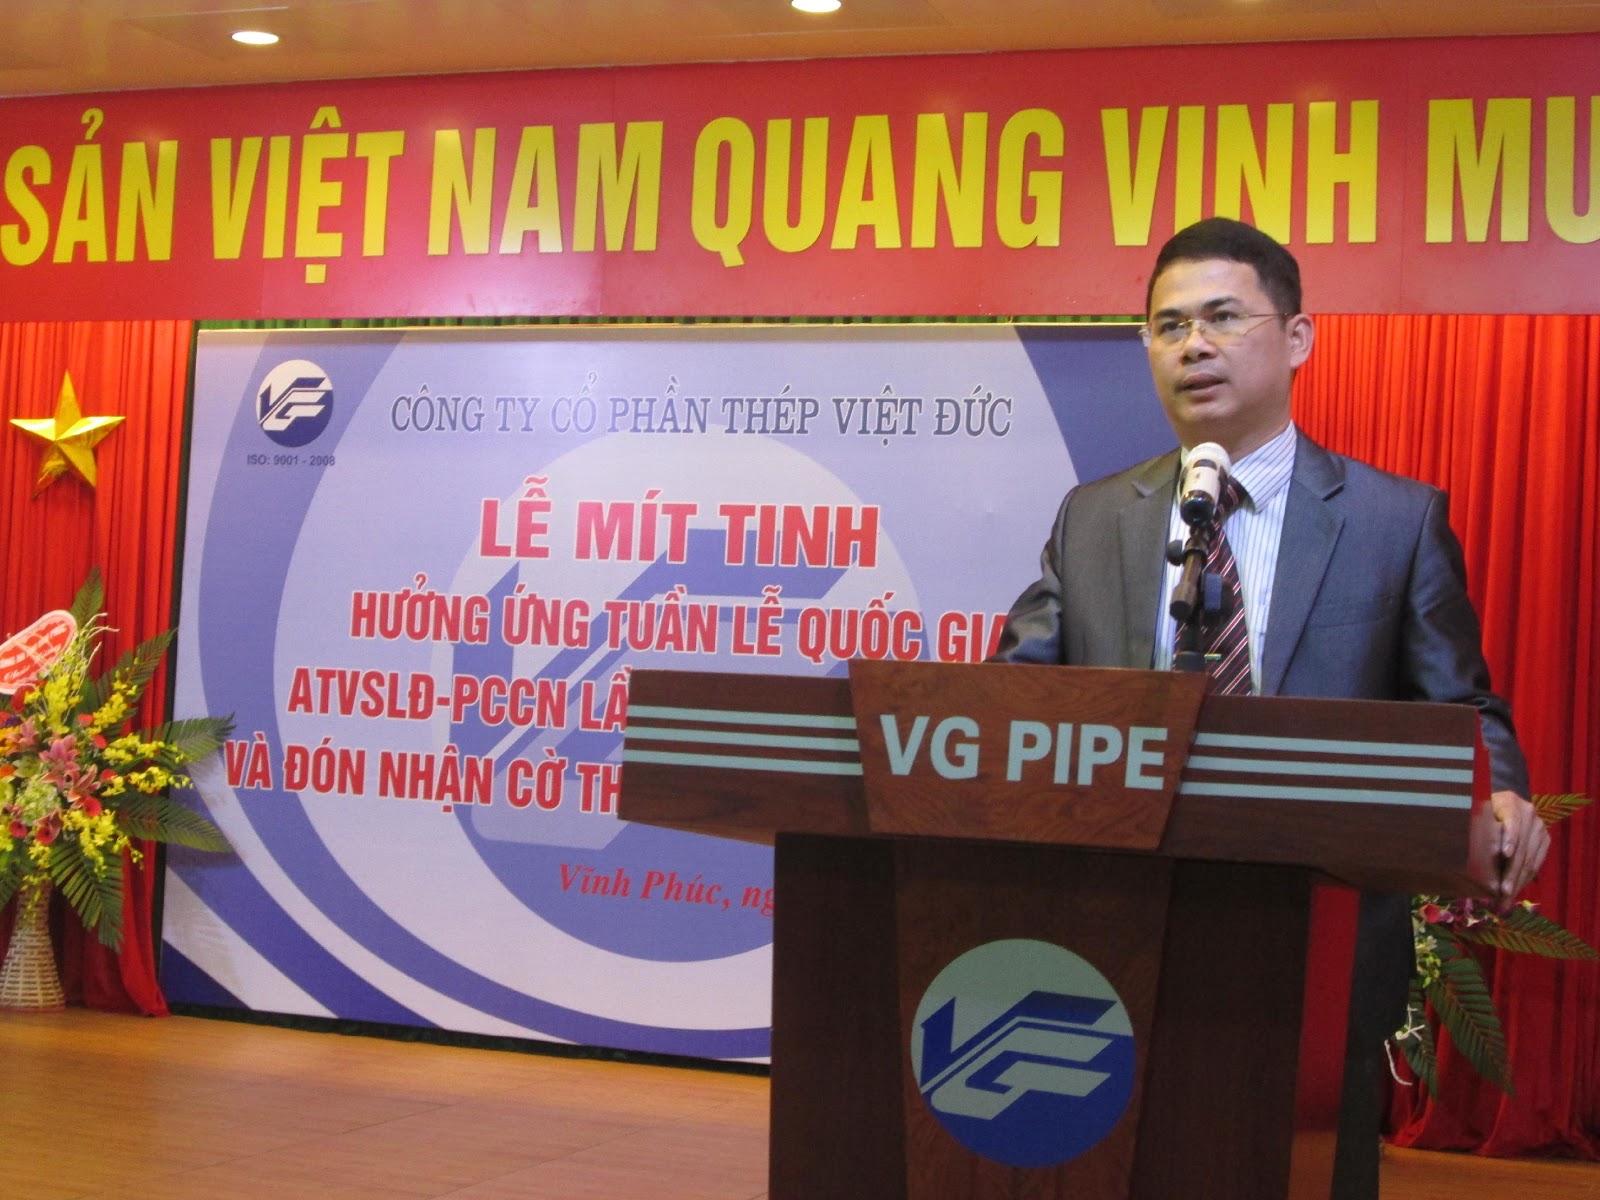 Thép Việt Đức tổ chức phát động hưởng ứng tuần lễ Quốc gia về ATVSLĐ- PCCN lần thứ 18 và đón nhận cờ thi đua của Bộ Công an